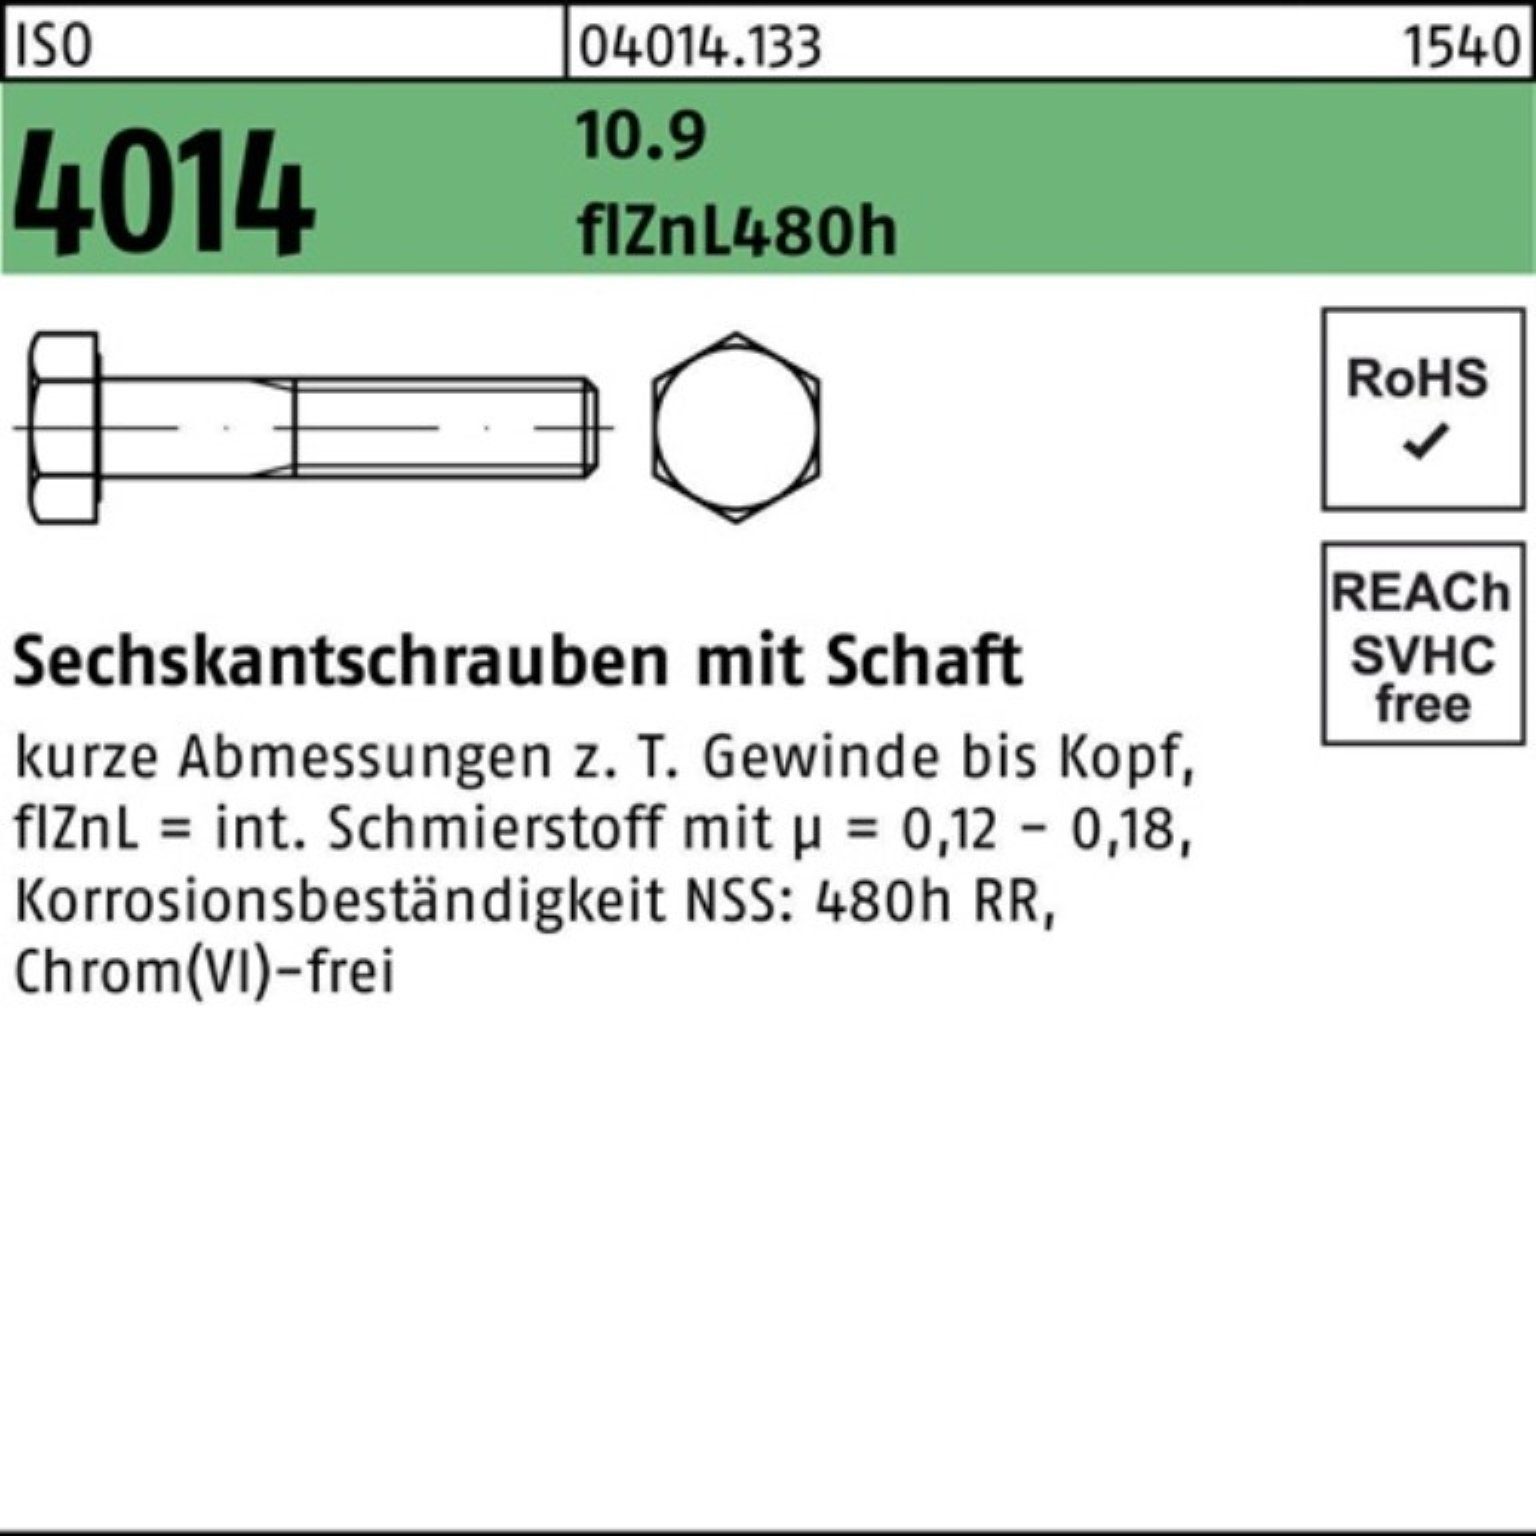 Bufab Sechskantschraube 100er ISO Schaft M20x Pack Sechskantschraube 4014 10.9 zinklamelle 290